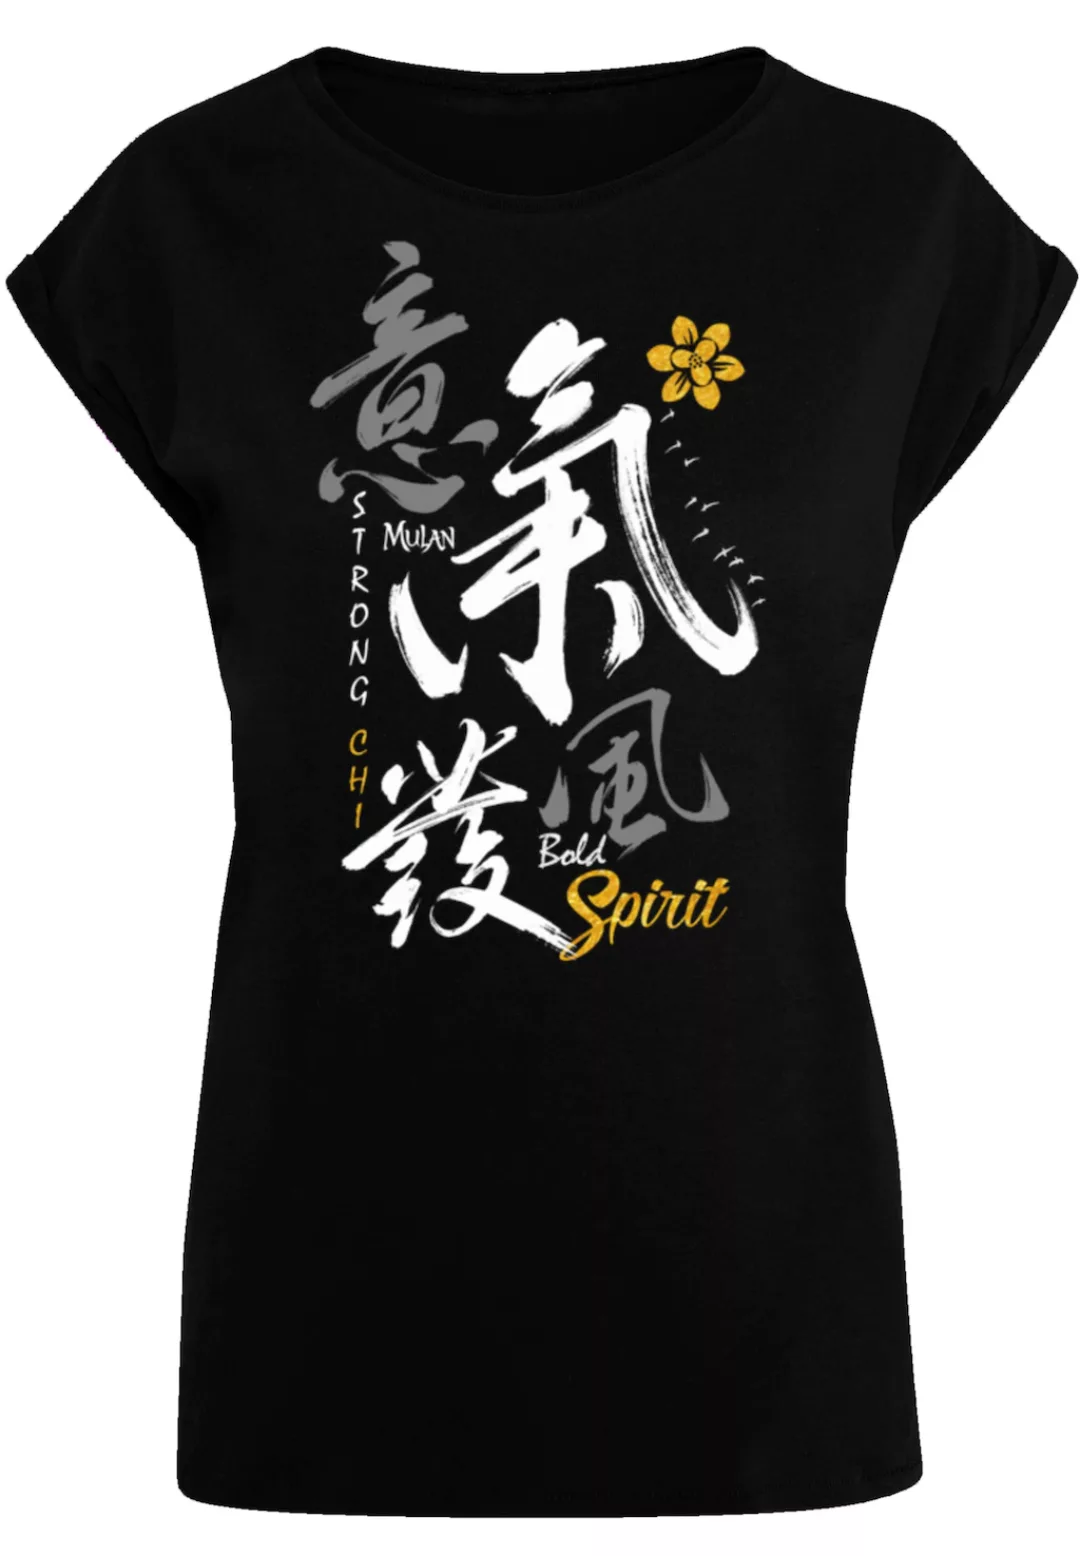 F4NT4STIC T-Shirt "Disney Mulan Bold Spirit", Premium Qualität günstig online kaufen